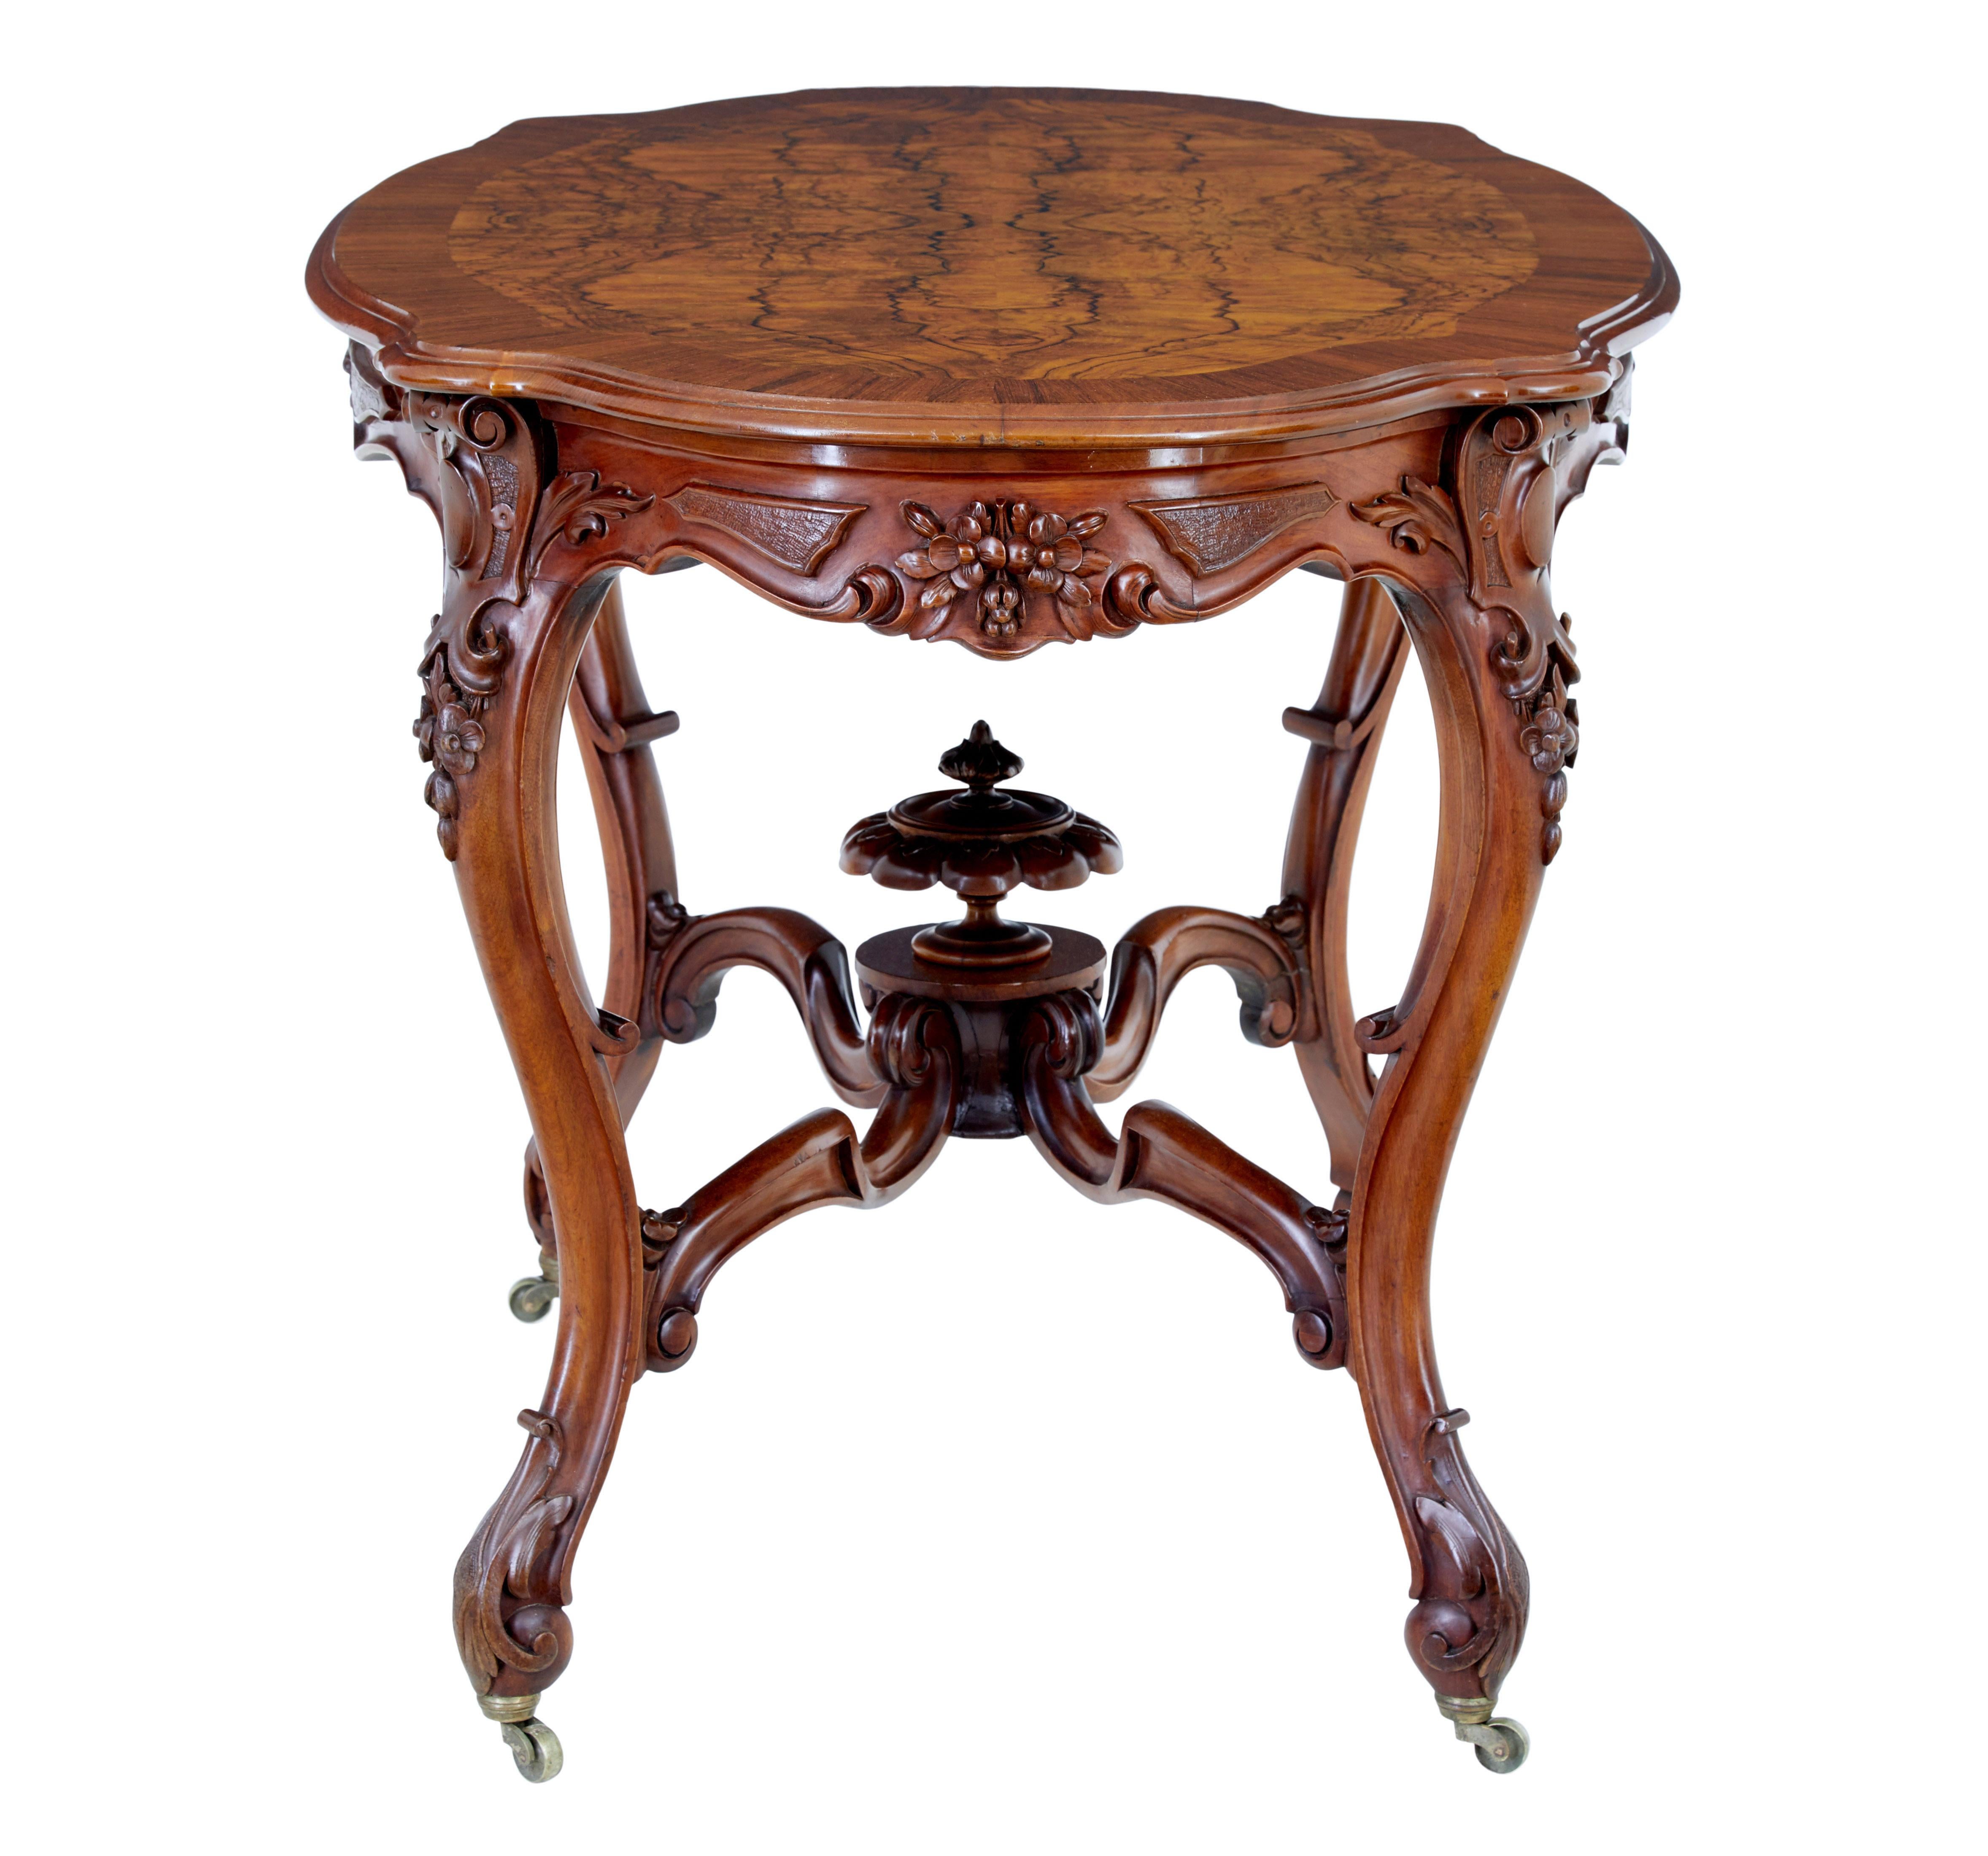 Geschnitzter Beistelltisch aus Nussbaumholz, 19. Jahrhundert, um 1890.

Hochwertiger schwedischer Tisch im Rokoko-Stil.  Die Abmessungen dieses Tisches eignen sich für mehrere Verwendungszwecke, z. B. als Mittel-, Sofa- oder Beistelltisch.

Die